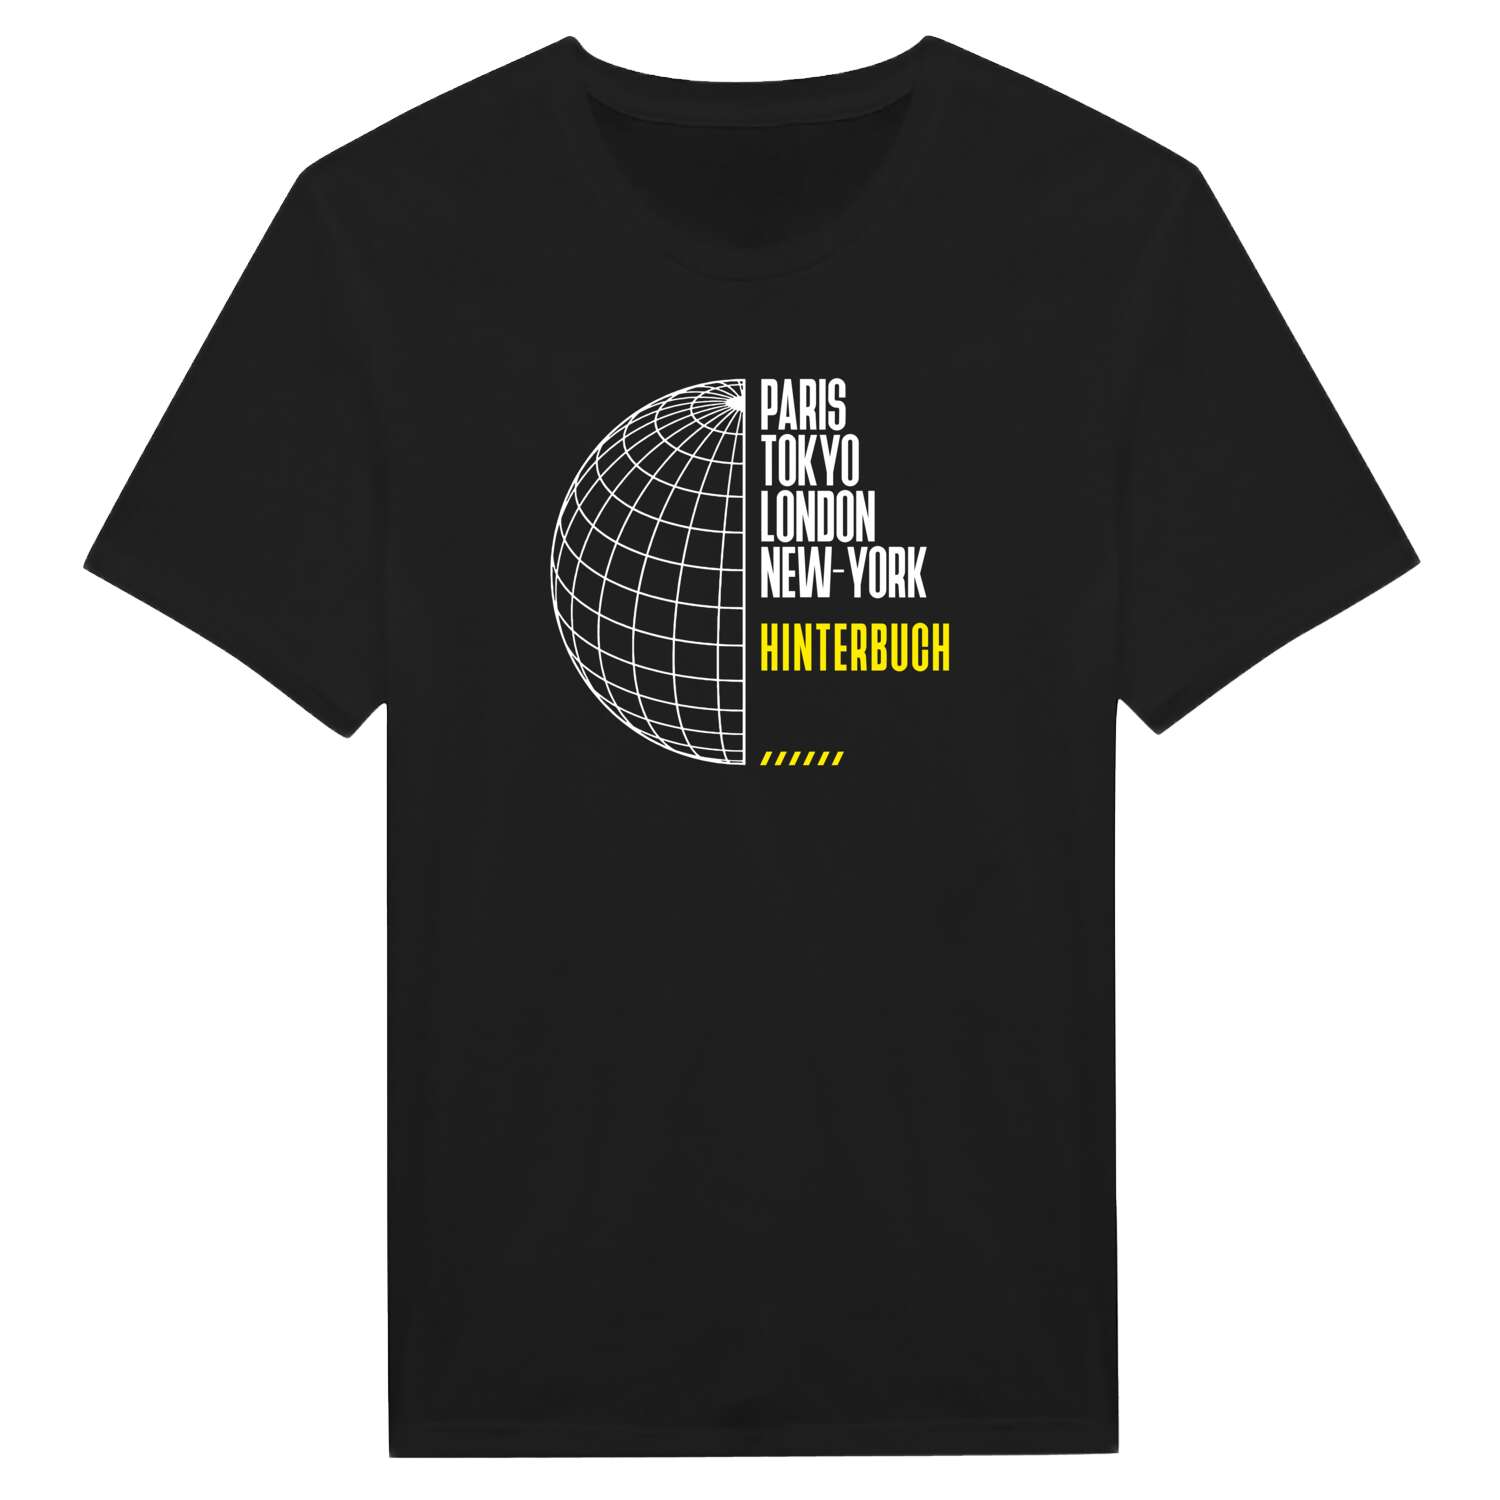 Hinterbuch T-Shirt »Paris Tokyo London«